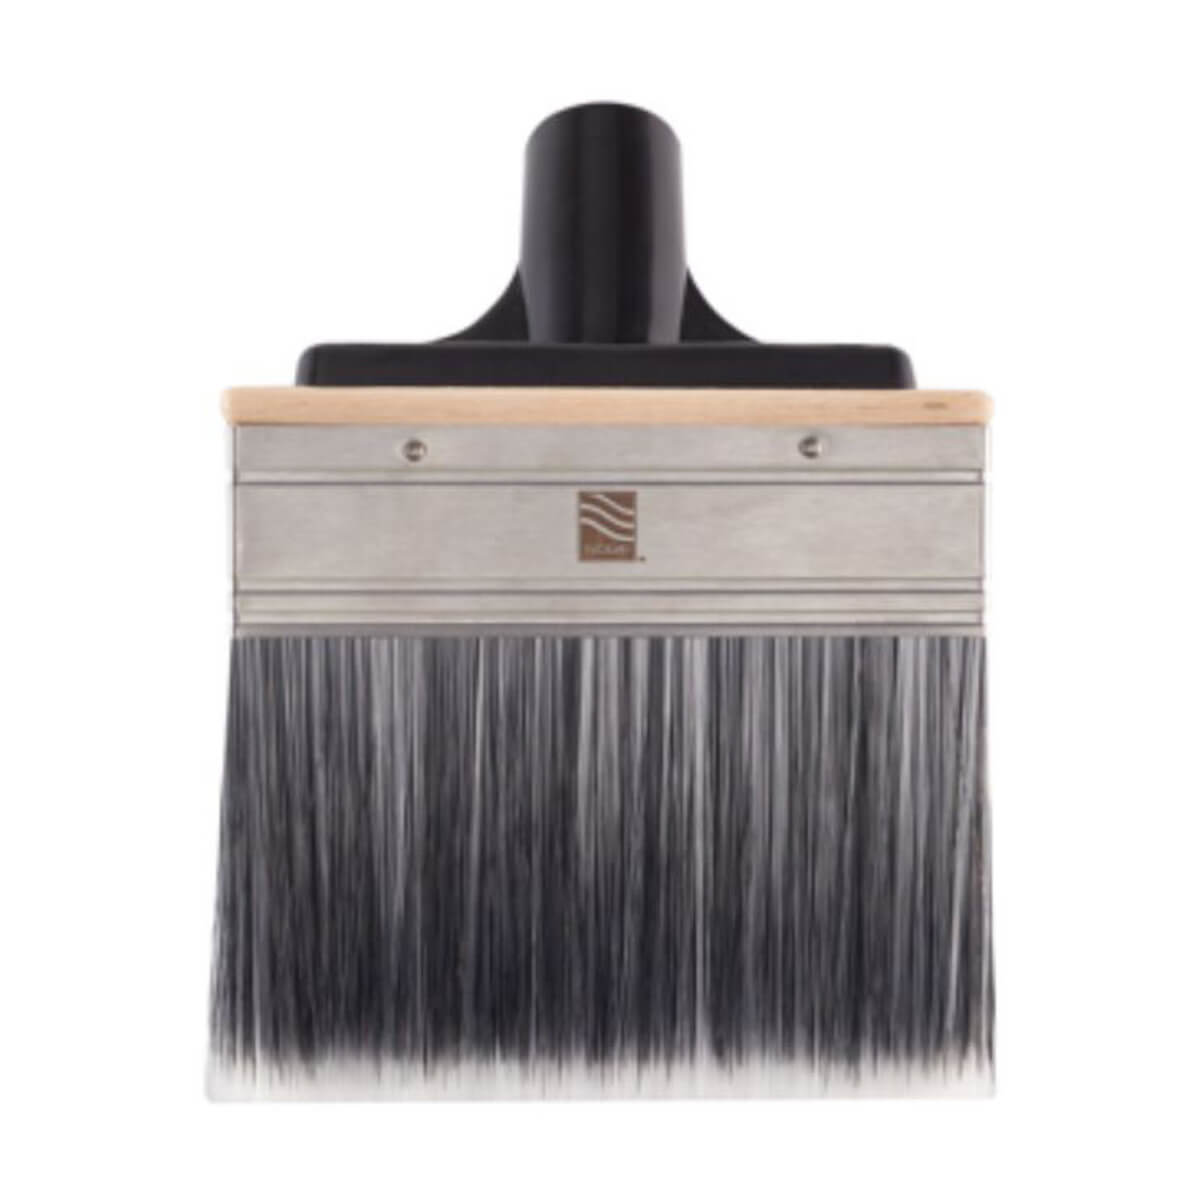 Woodcare Premium Stain Brush